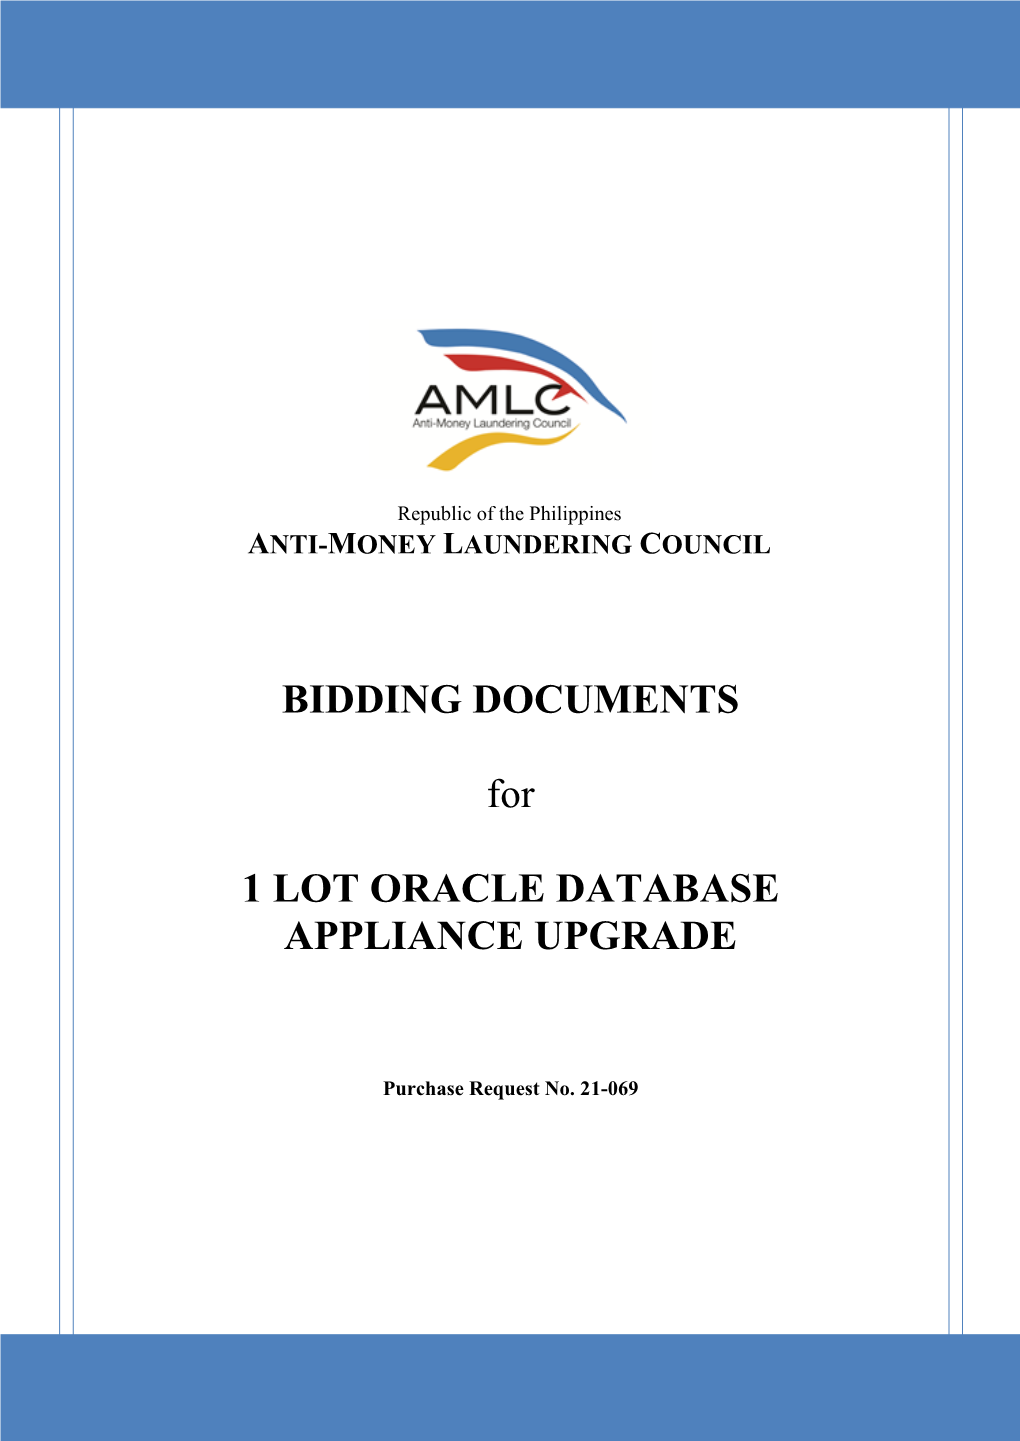 Oracle Database Appliance Upgrade